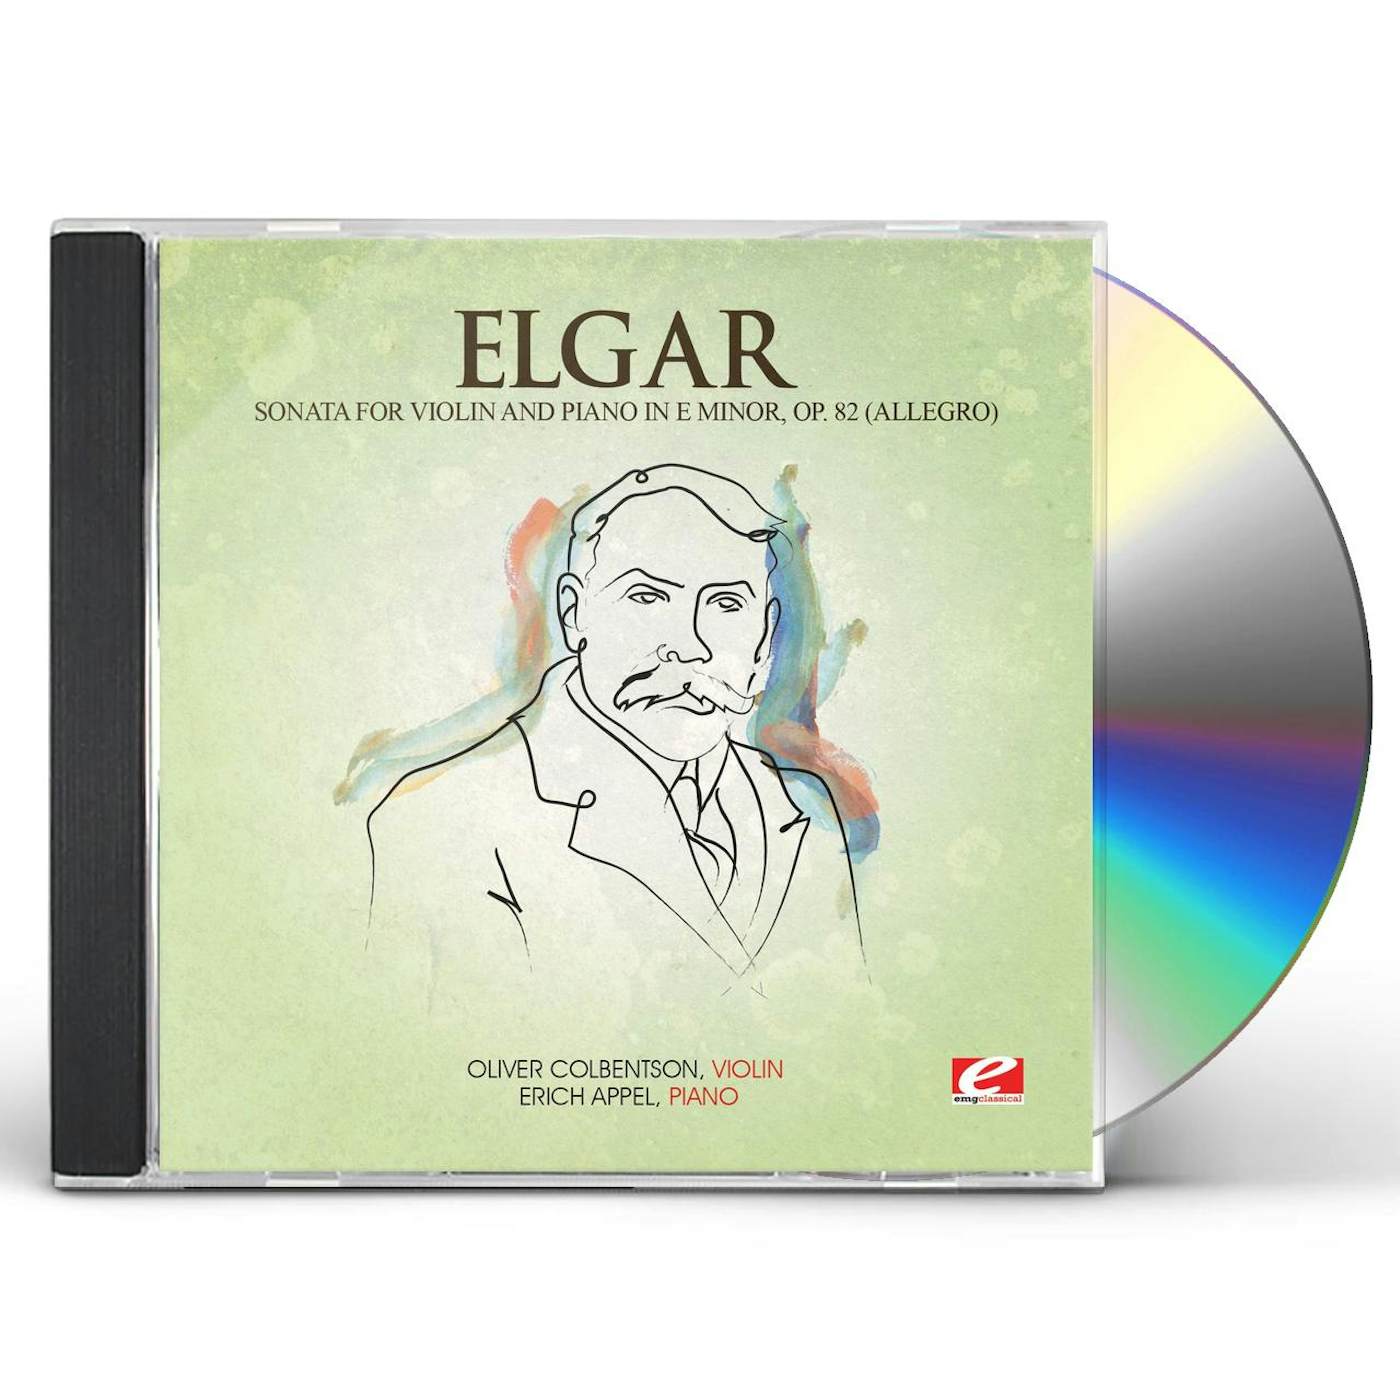 Elgar SONATA VIOL & PIANO E MIN 82 (ALLEGRO) CD